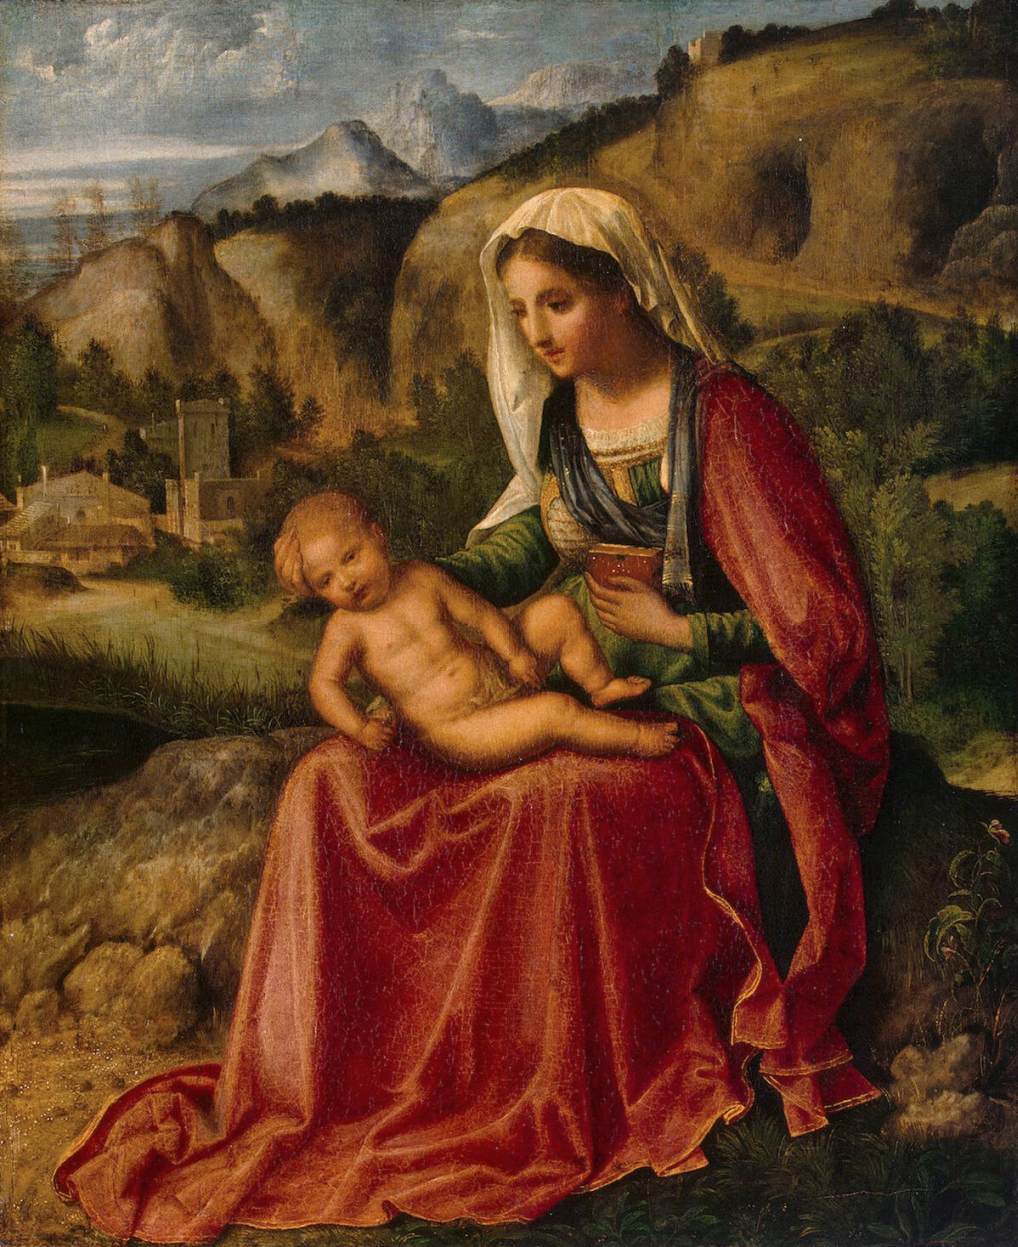 La vierge et l'enfant dans un paysage